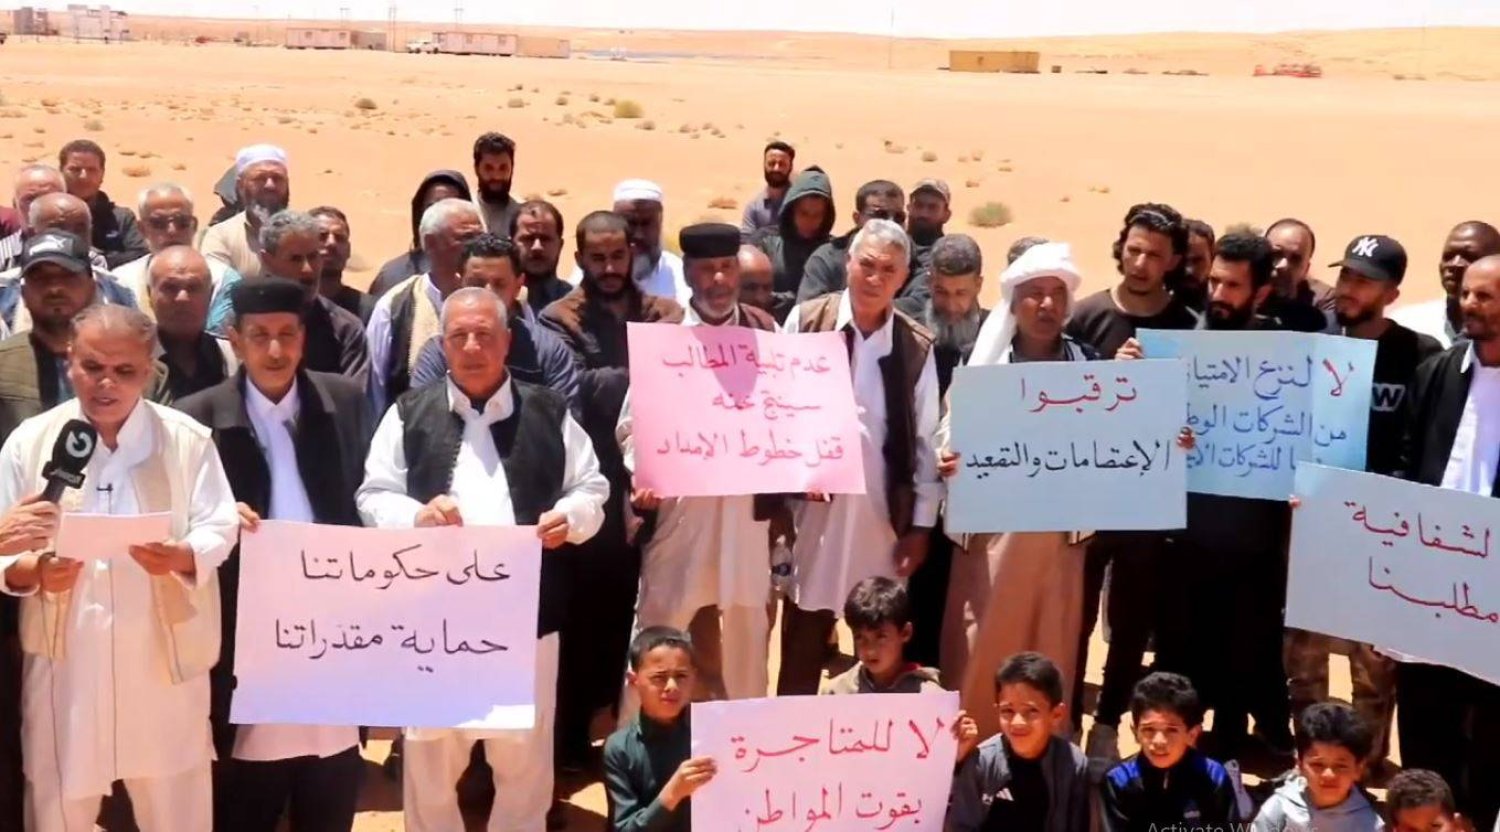 مظاهرة لـ«تجمع الحركات الشعبية» في ليبيا (صورة من مقطع فيديو)